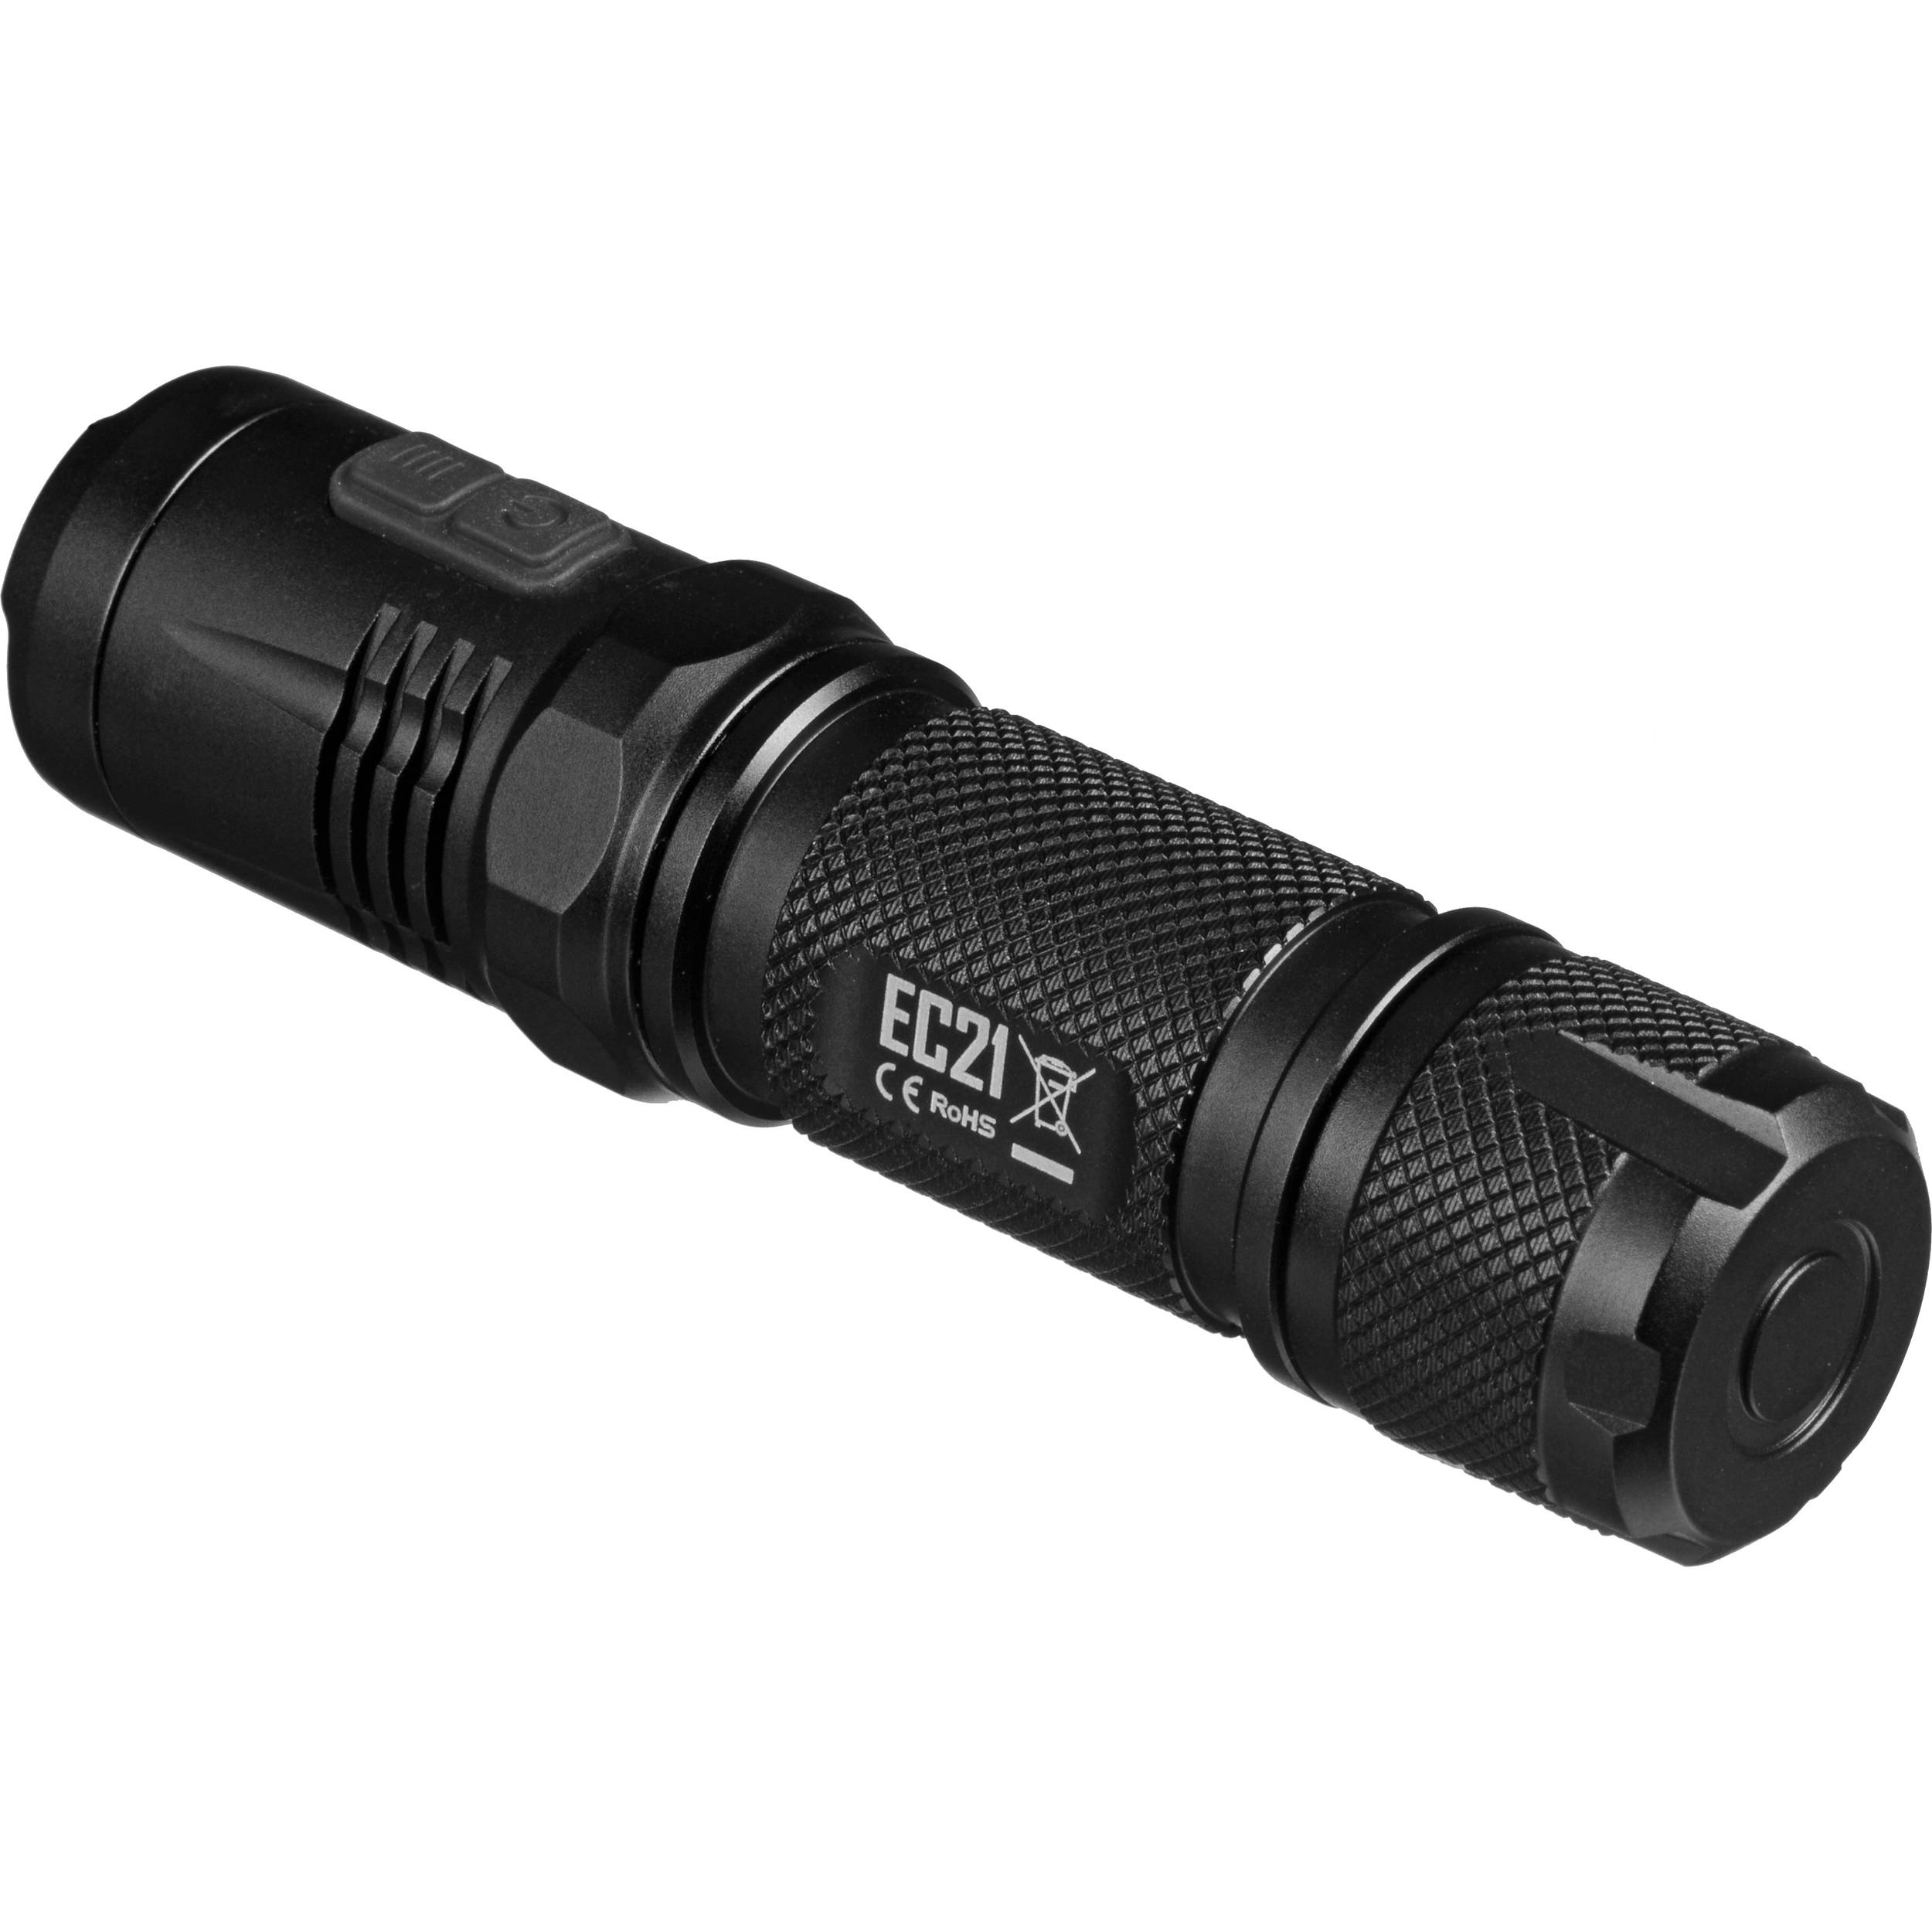 NITECORE EC21 Explorer LED Flashlight